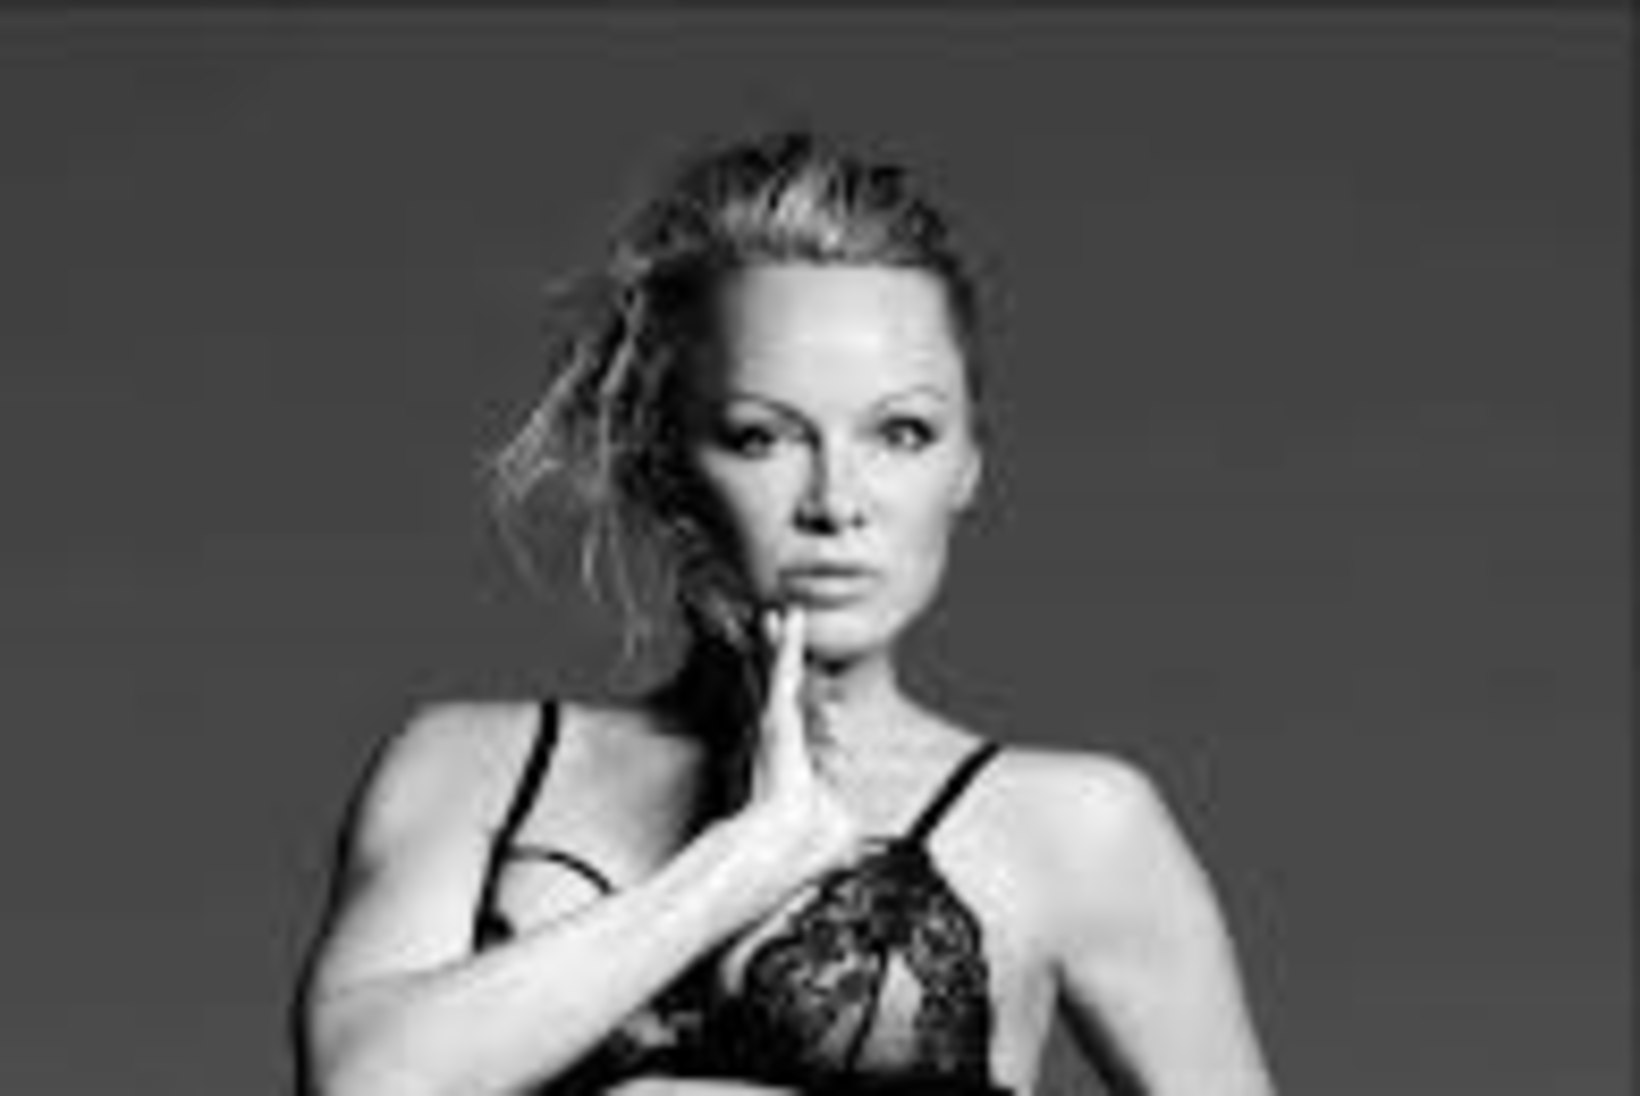 49aastane Pamela Anderson aeleb paljastavas sekspesus